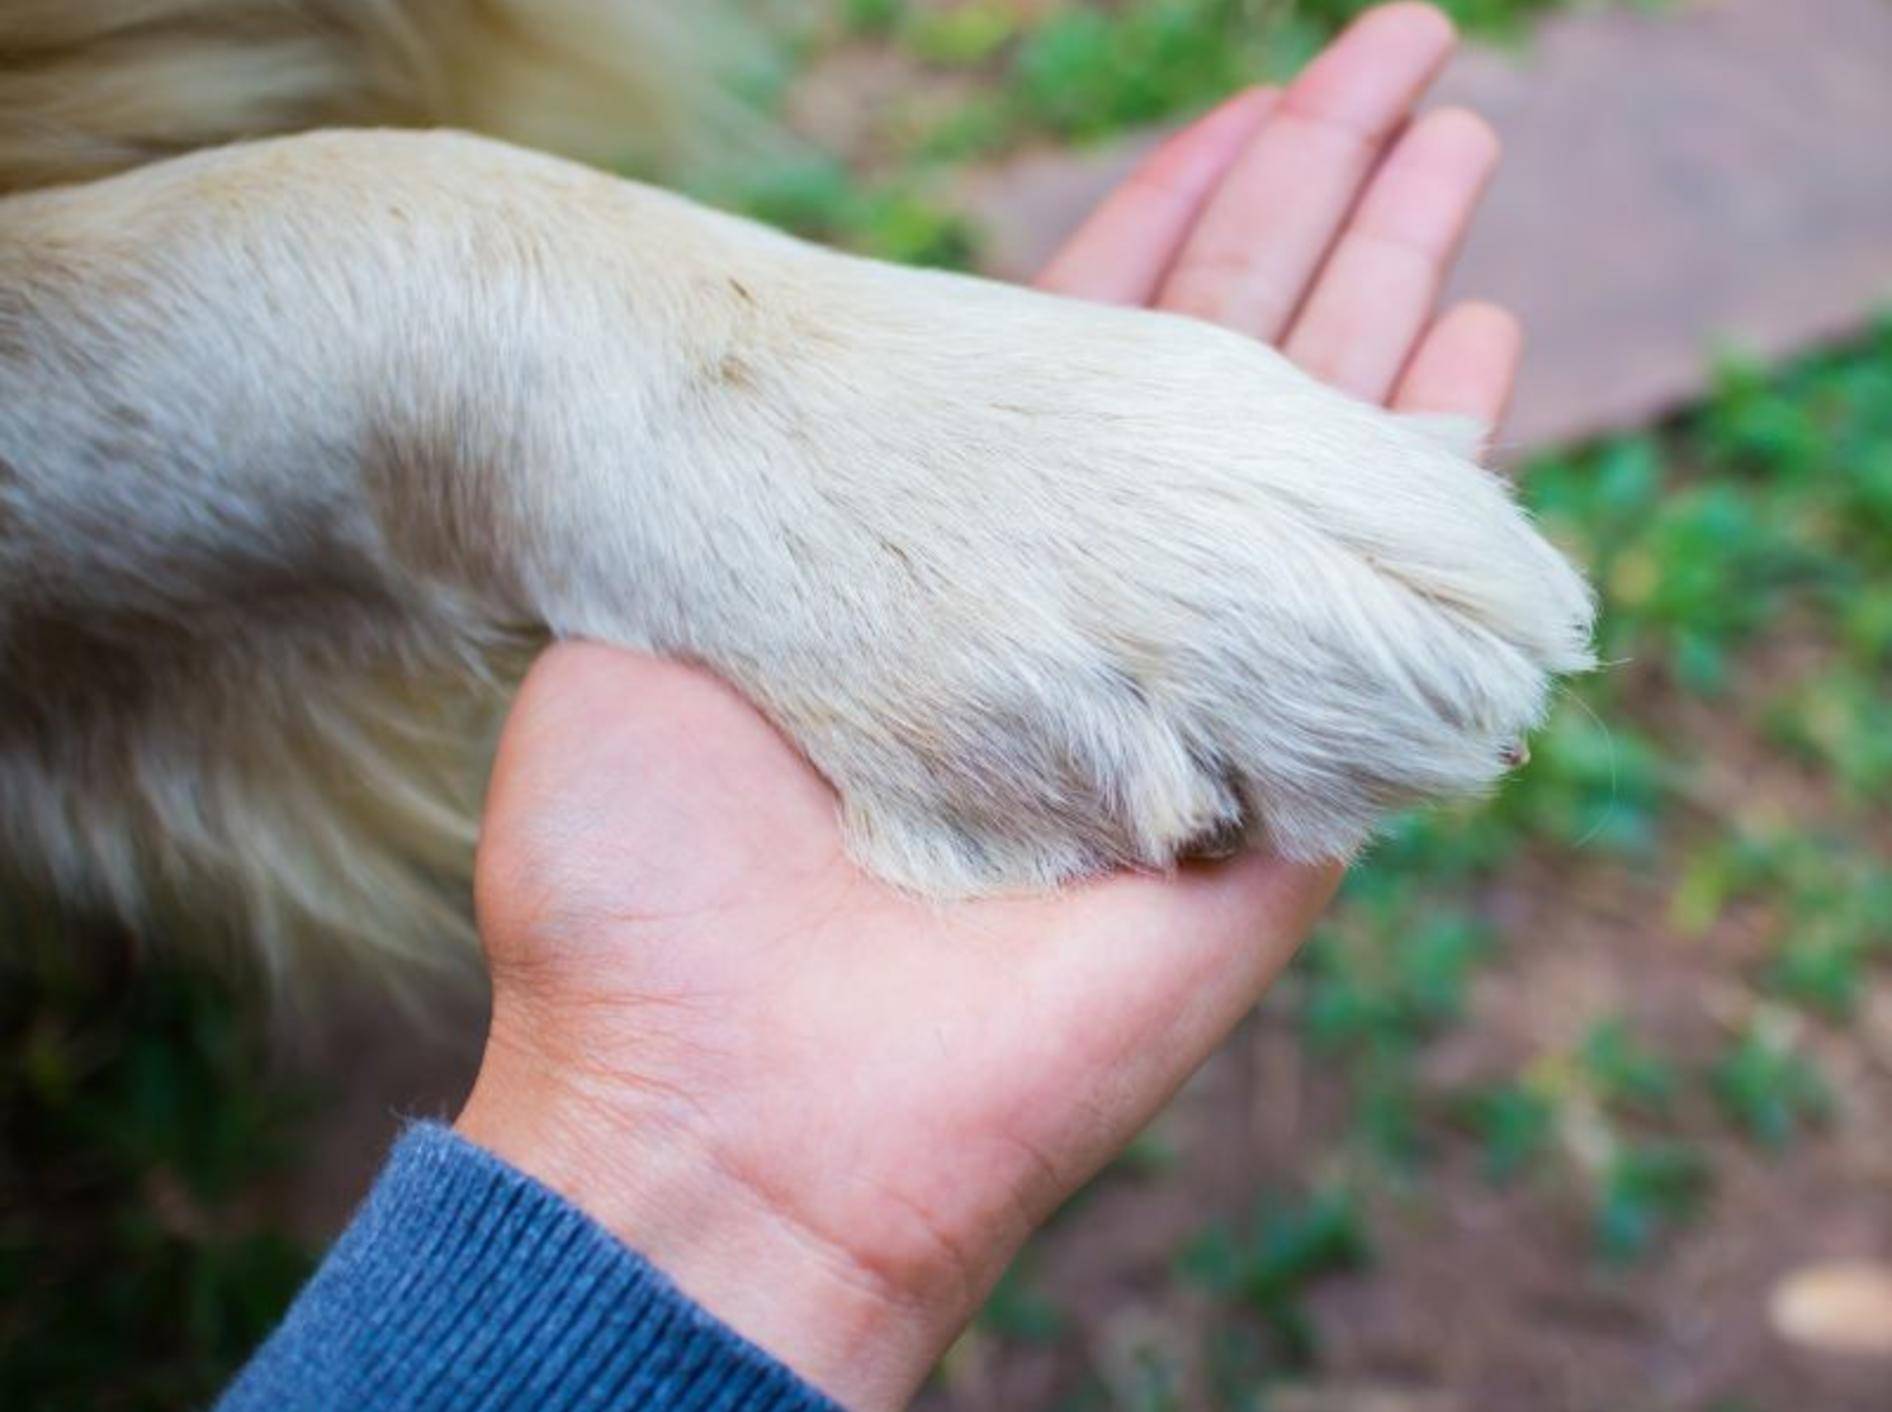 Eine abgebrochene Kralle ist für den Hund sehr unangenehm – Bild: Shutterstock / kridsada tipchot